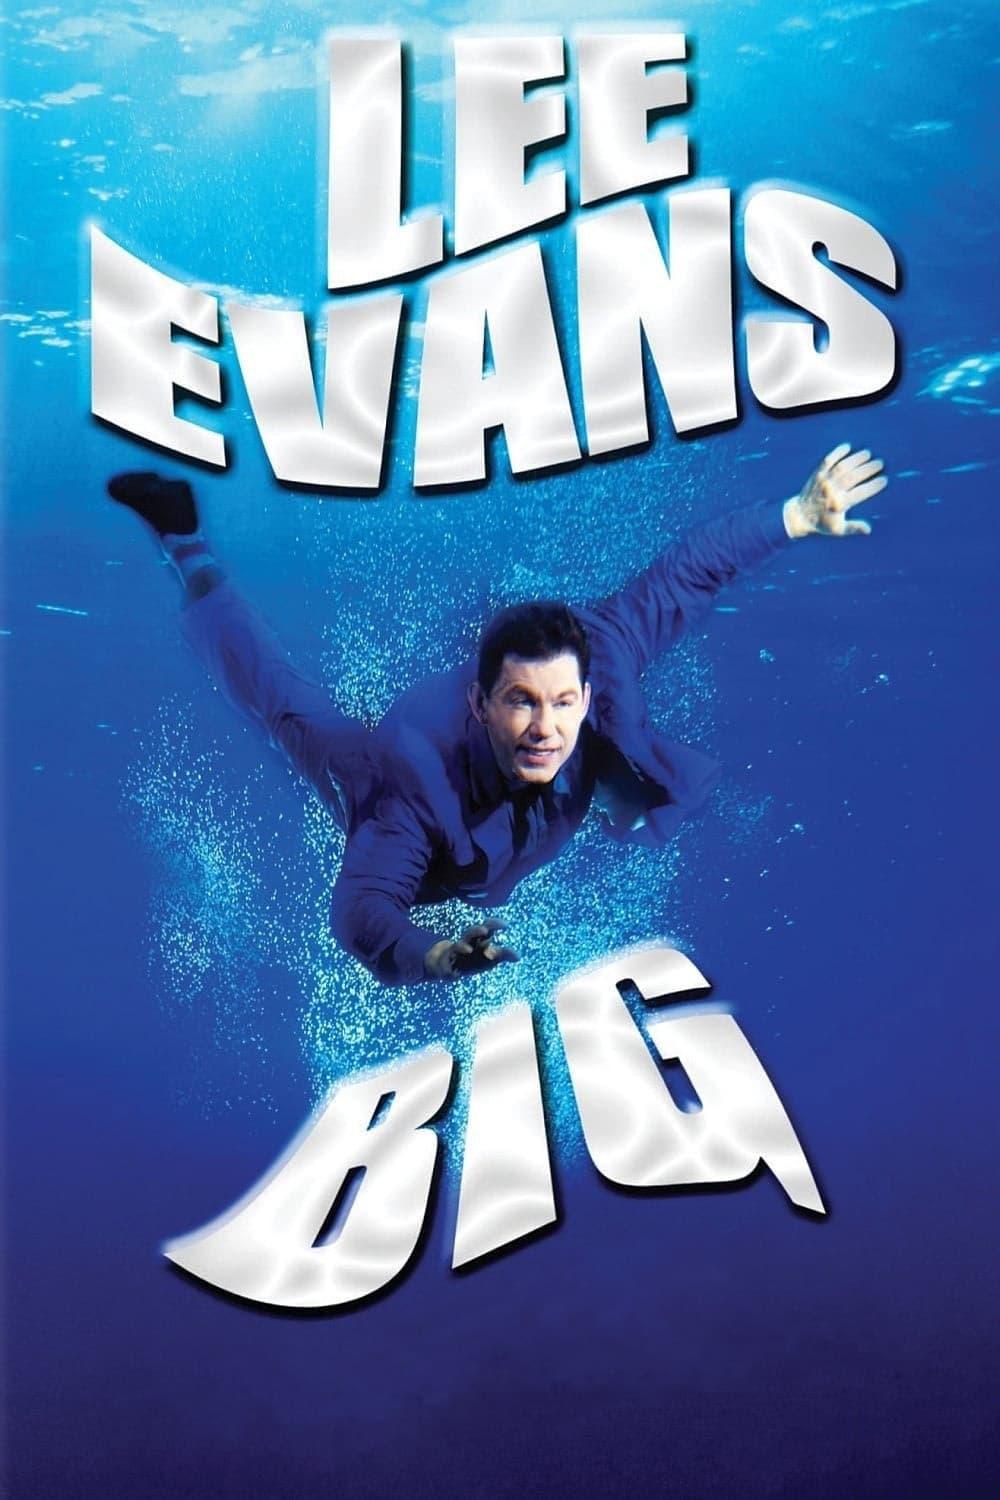 Lee Evans: Big poster